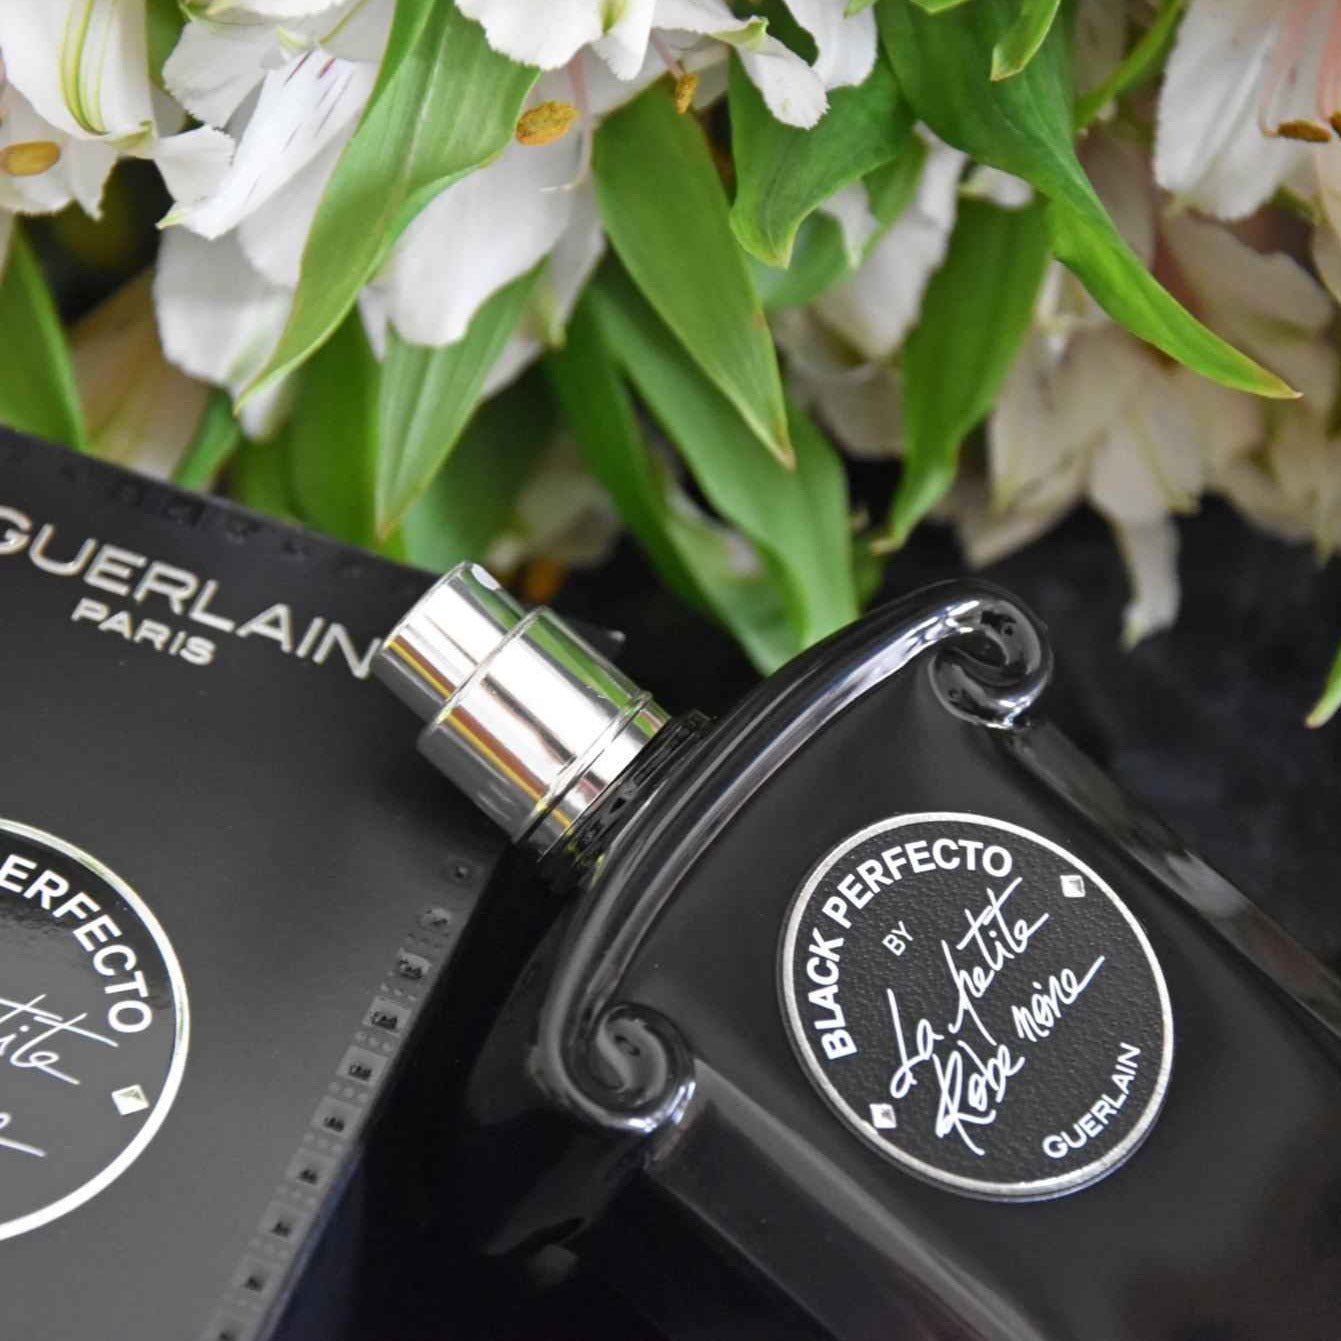 Guerlain La Petite Robe Noire Black Perfecto EDP Florale | My Perfume Shop